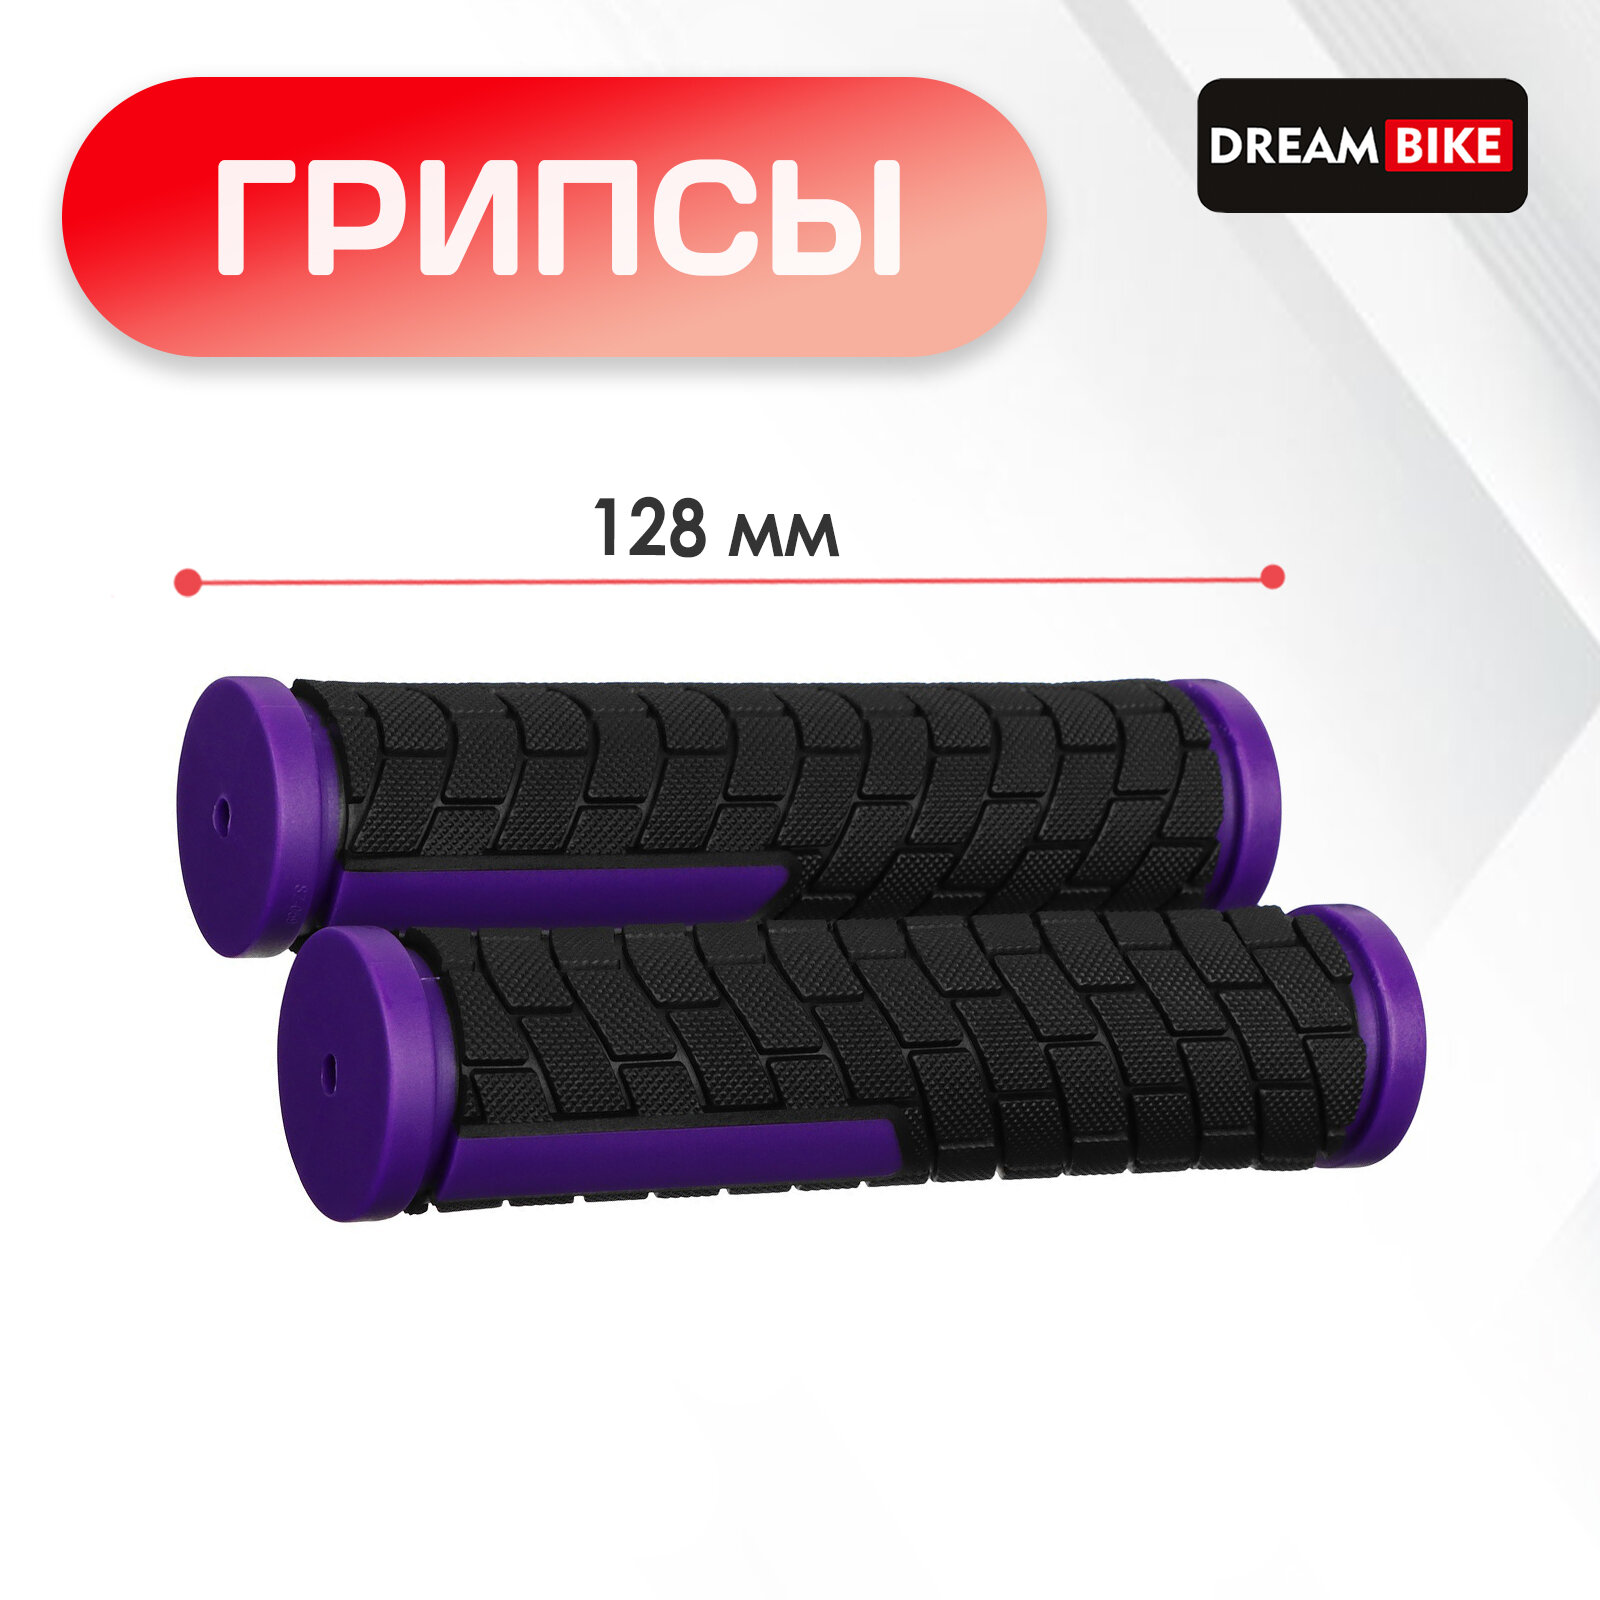 Грипсы 128 мм, Dream Bike, посадочный диаметр 22,2 мм, цвет чёрный, фиолетовый